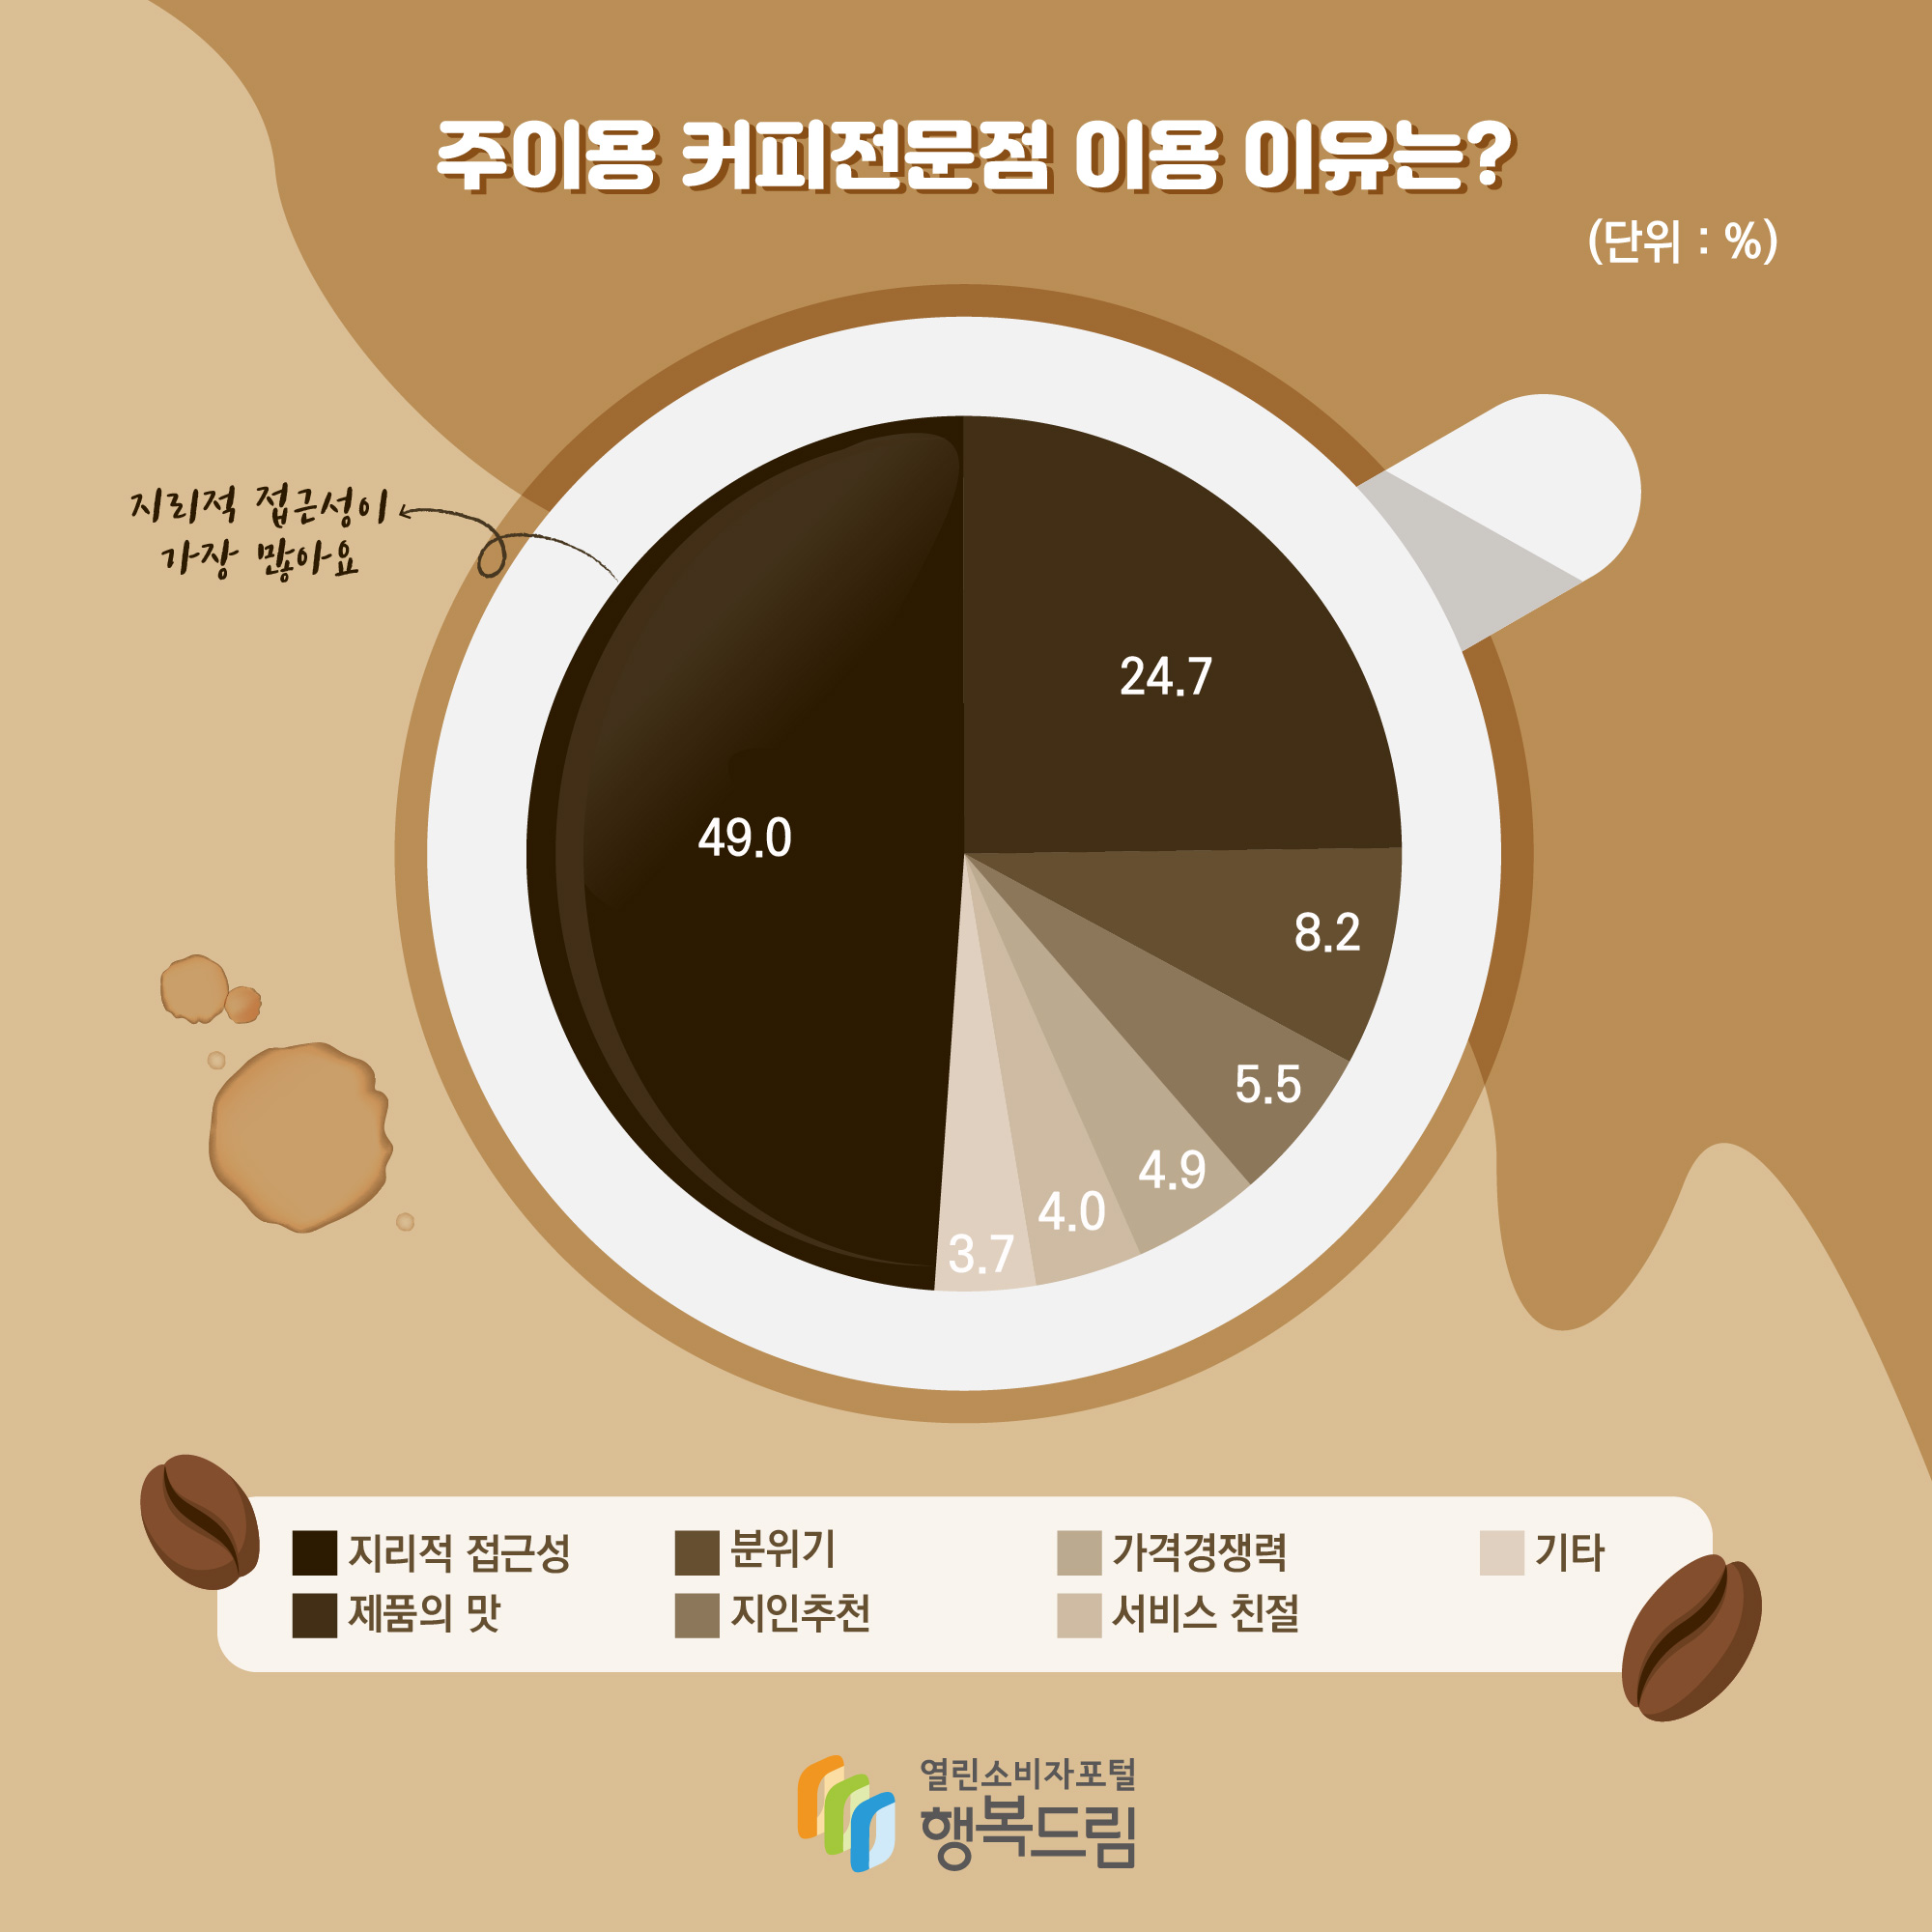 주이용 커피전문점 이용 이유는? (단위: %) 지리적 접근성 49.0 지리적 접근성이 가장 많아요 제품의 맛 24.7 분위기 82. 지인추천 5.5 가격경쟁력 4.9 서비스 친절 4.0 기타 3.7